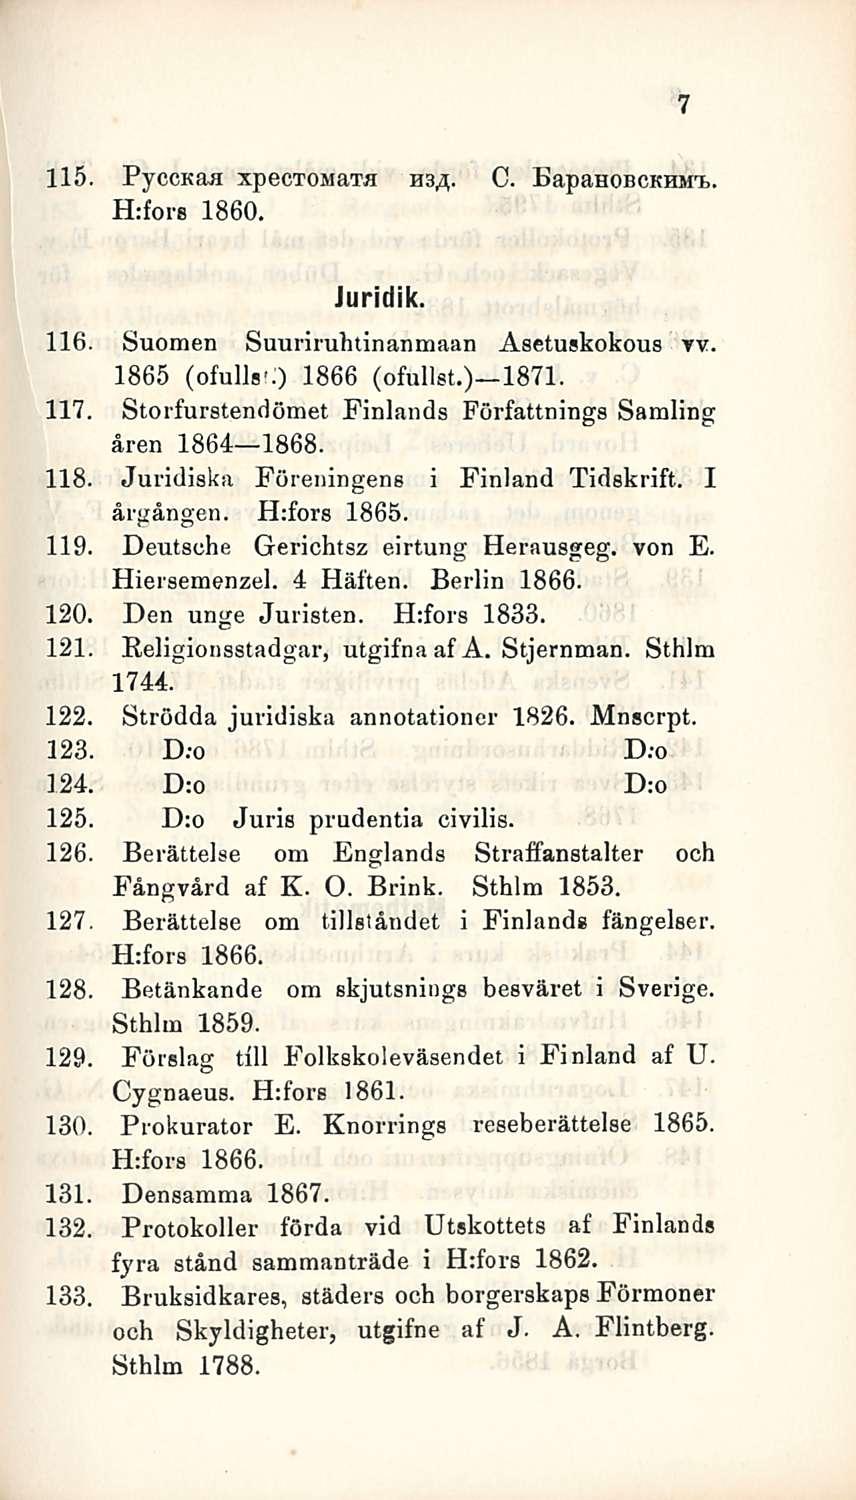 115. PyccKaa xpectosiata H3s. C. BapauoßCKHsrt,. Hrfors 1860. 7 Juridik. 116. Suomen Suuriruhtinanmaan Asetuskokous tv. 1865 (ofullsc) 1866 (ofullst.) lb7l. 117.